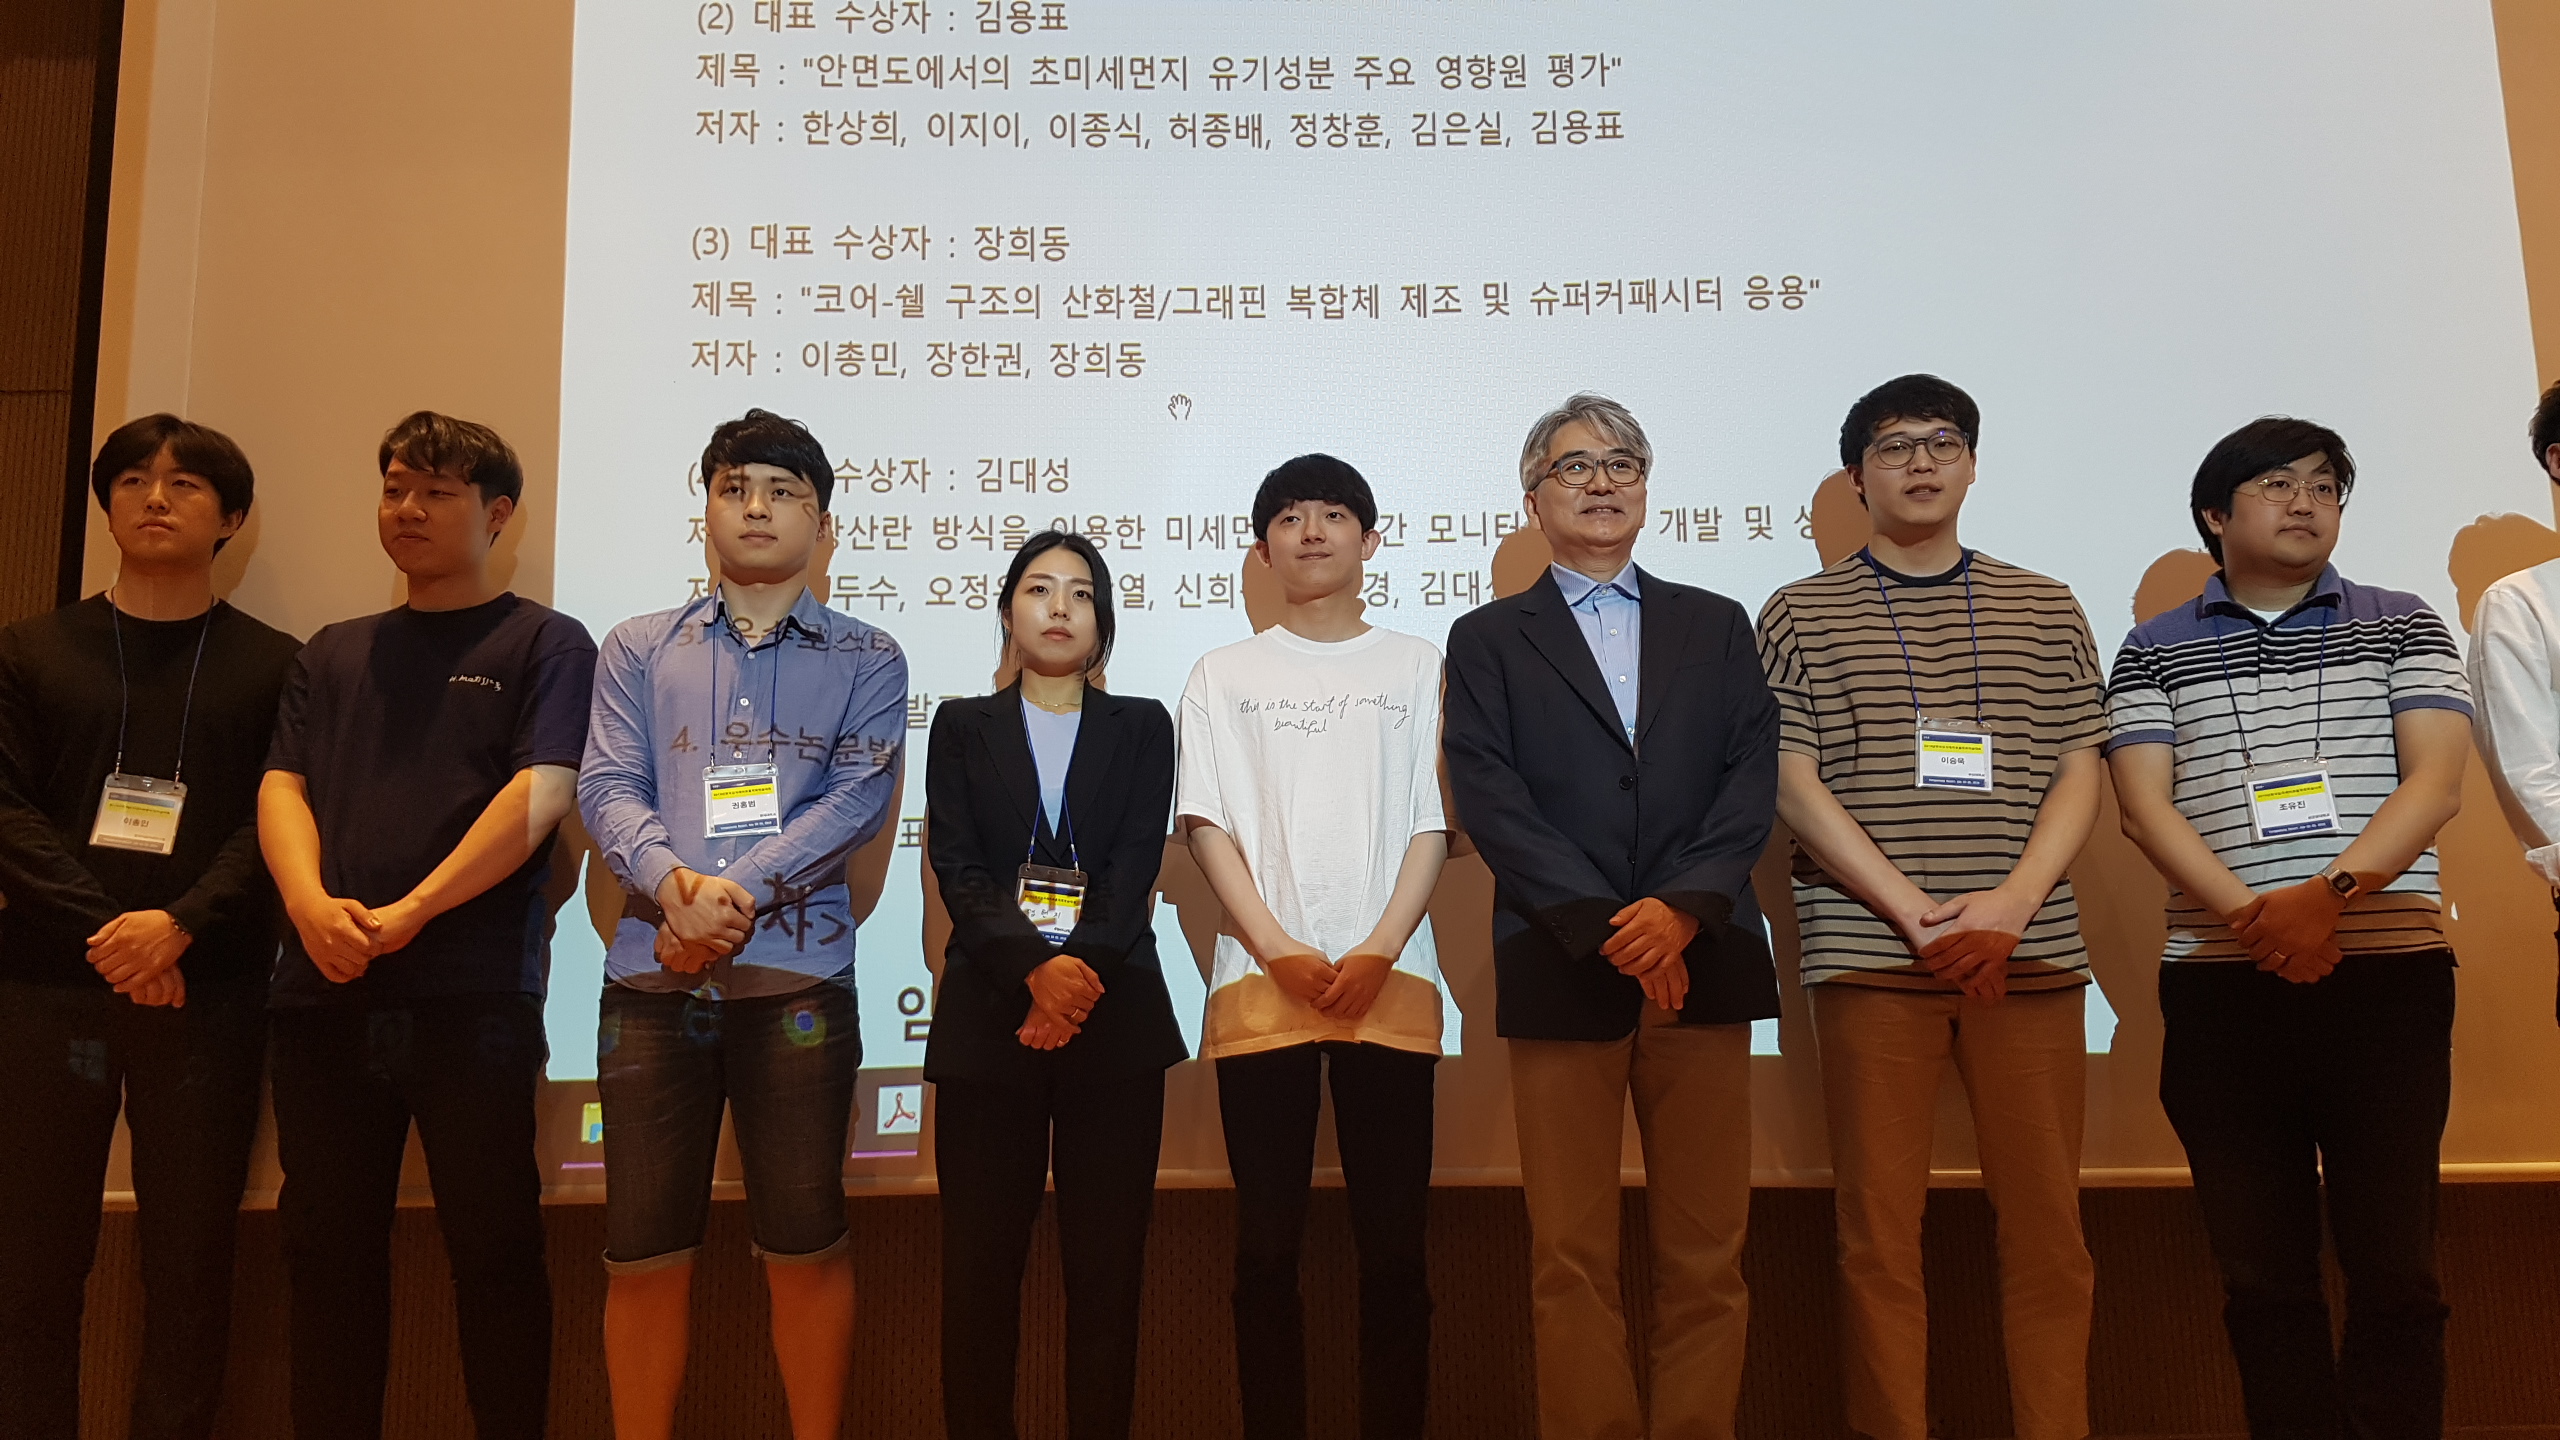 2019.7.2-4 KAPAR conference at Yong Pyung 20190704_184036.jpg